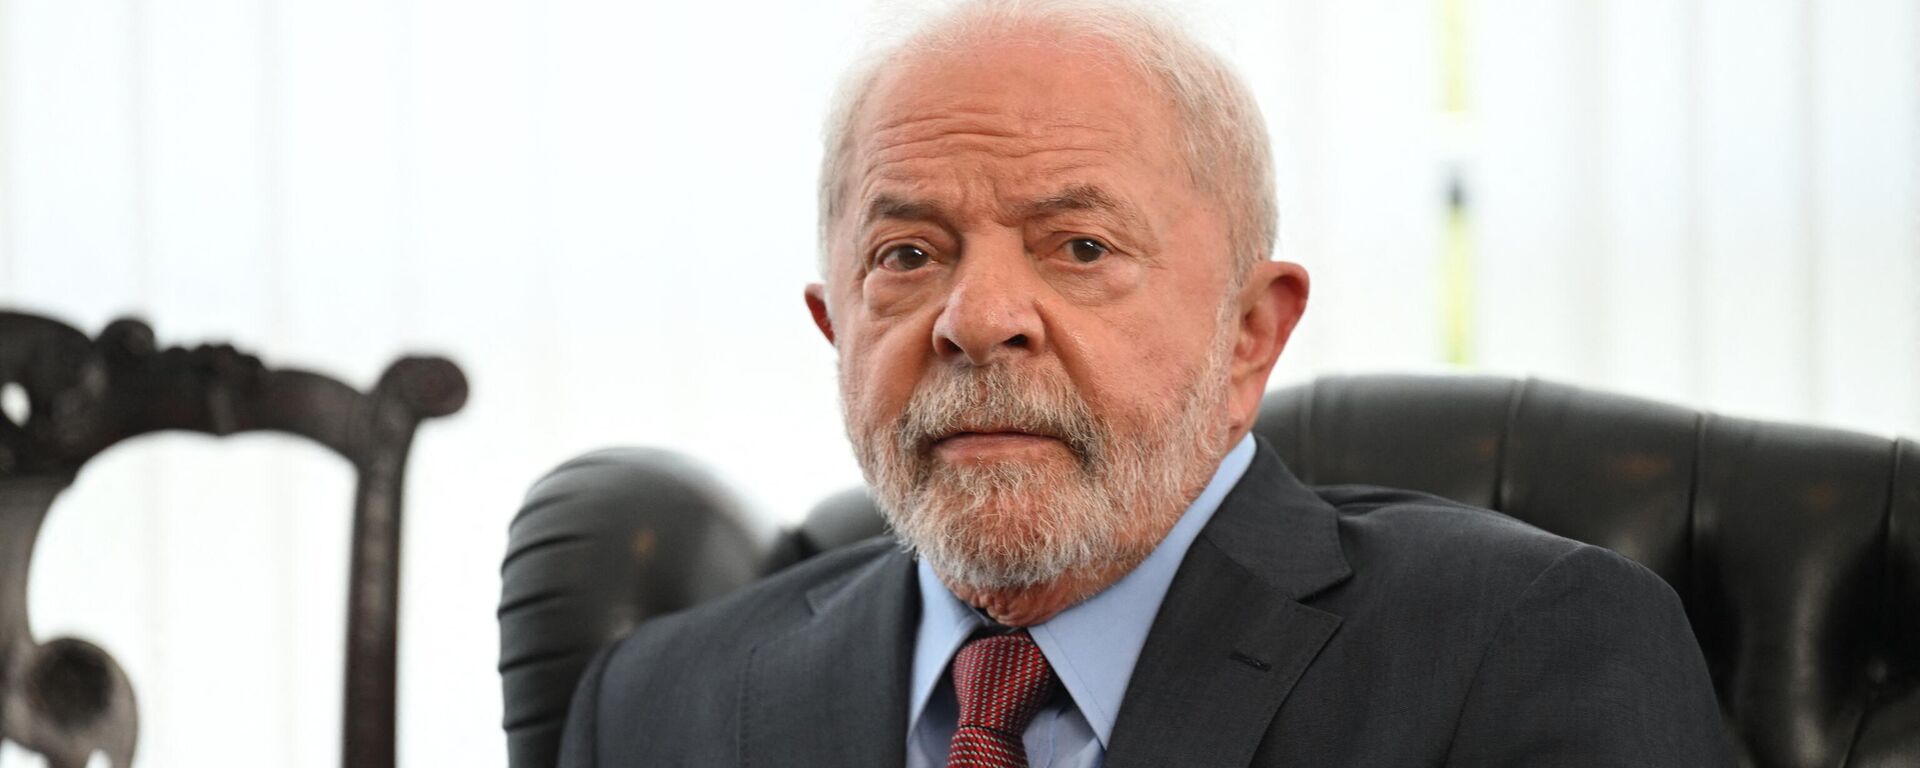 O presidente do Brasil, Luiz Inácio Lula da Silva, em Brasília (DF), em 2 de janeiro de 2023 - Sputnik Brasil, 1920, 06.01.2023